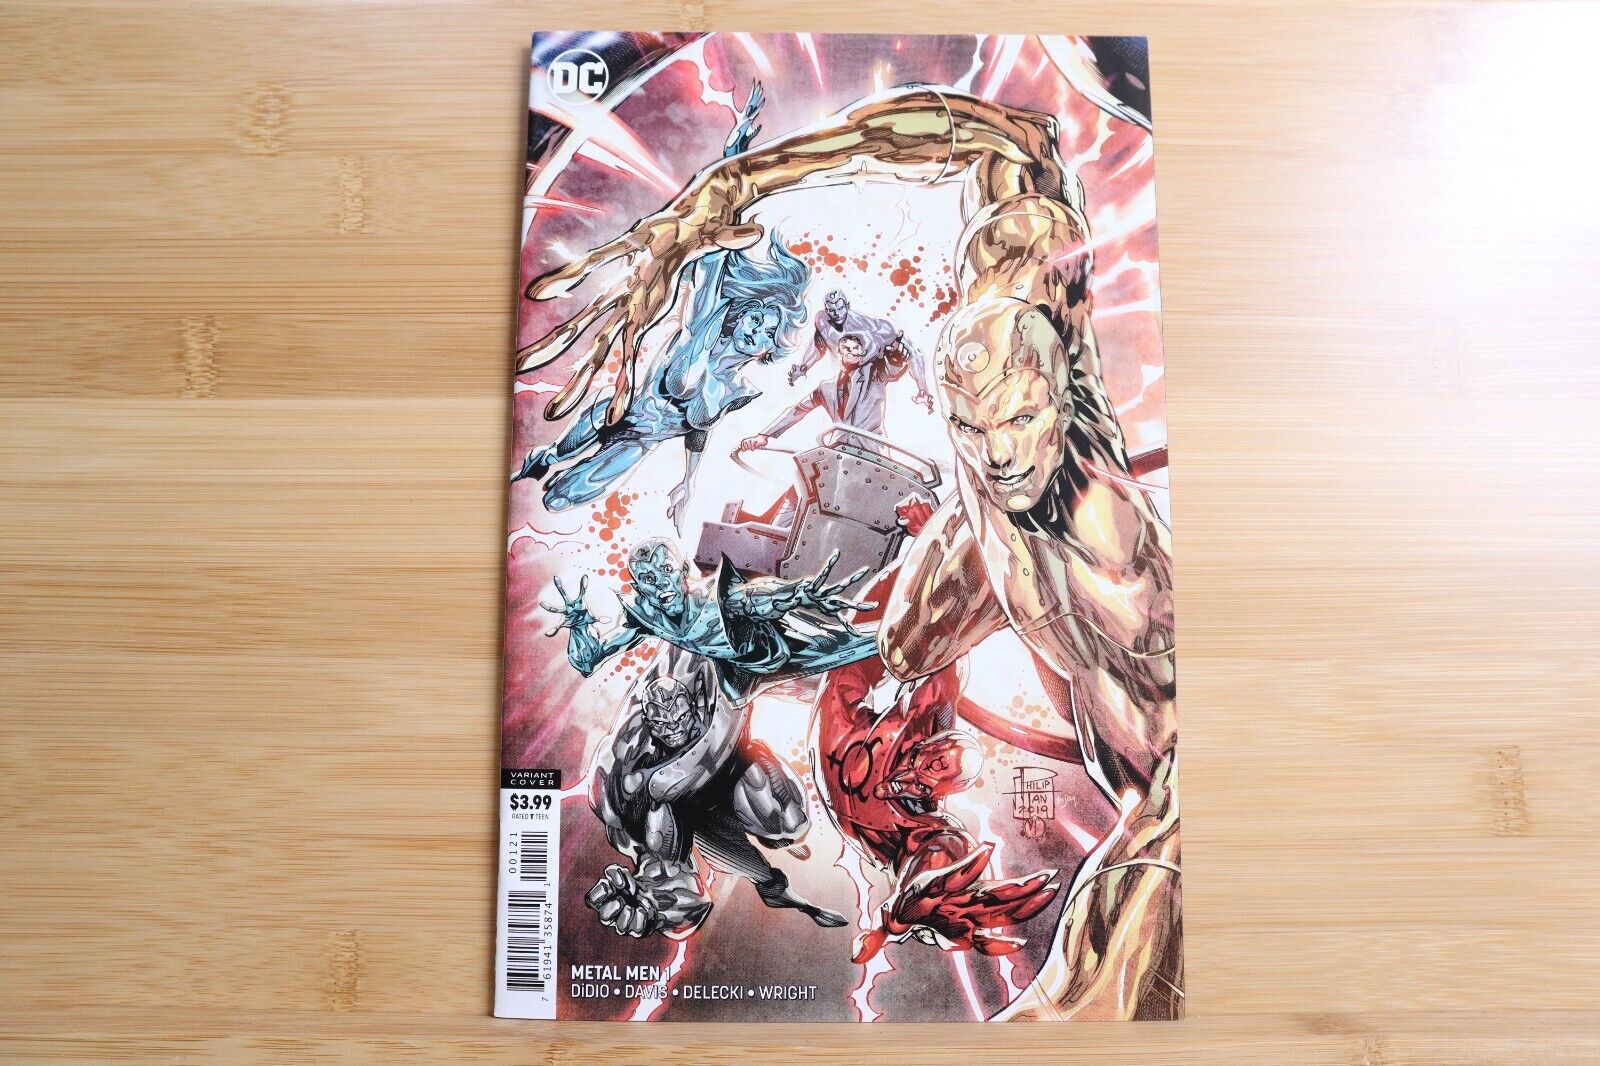 Metal Men #1 DC Comics Philip Tan Variant Edition NM - 2019